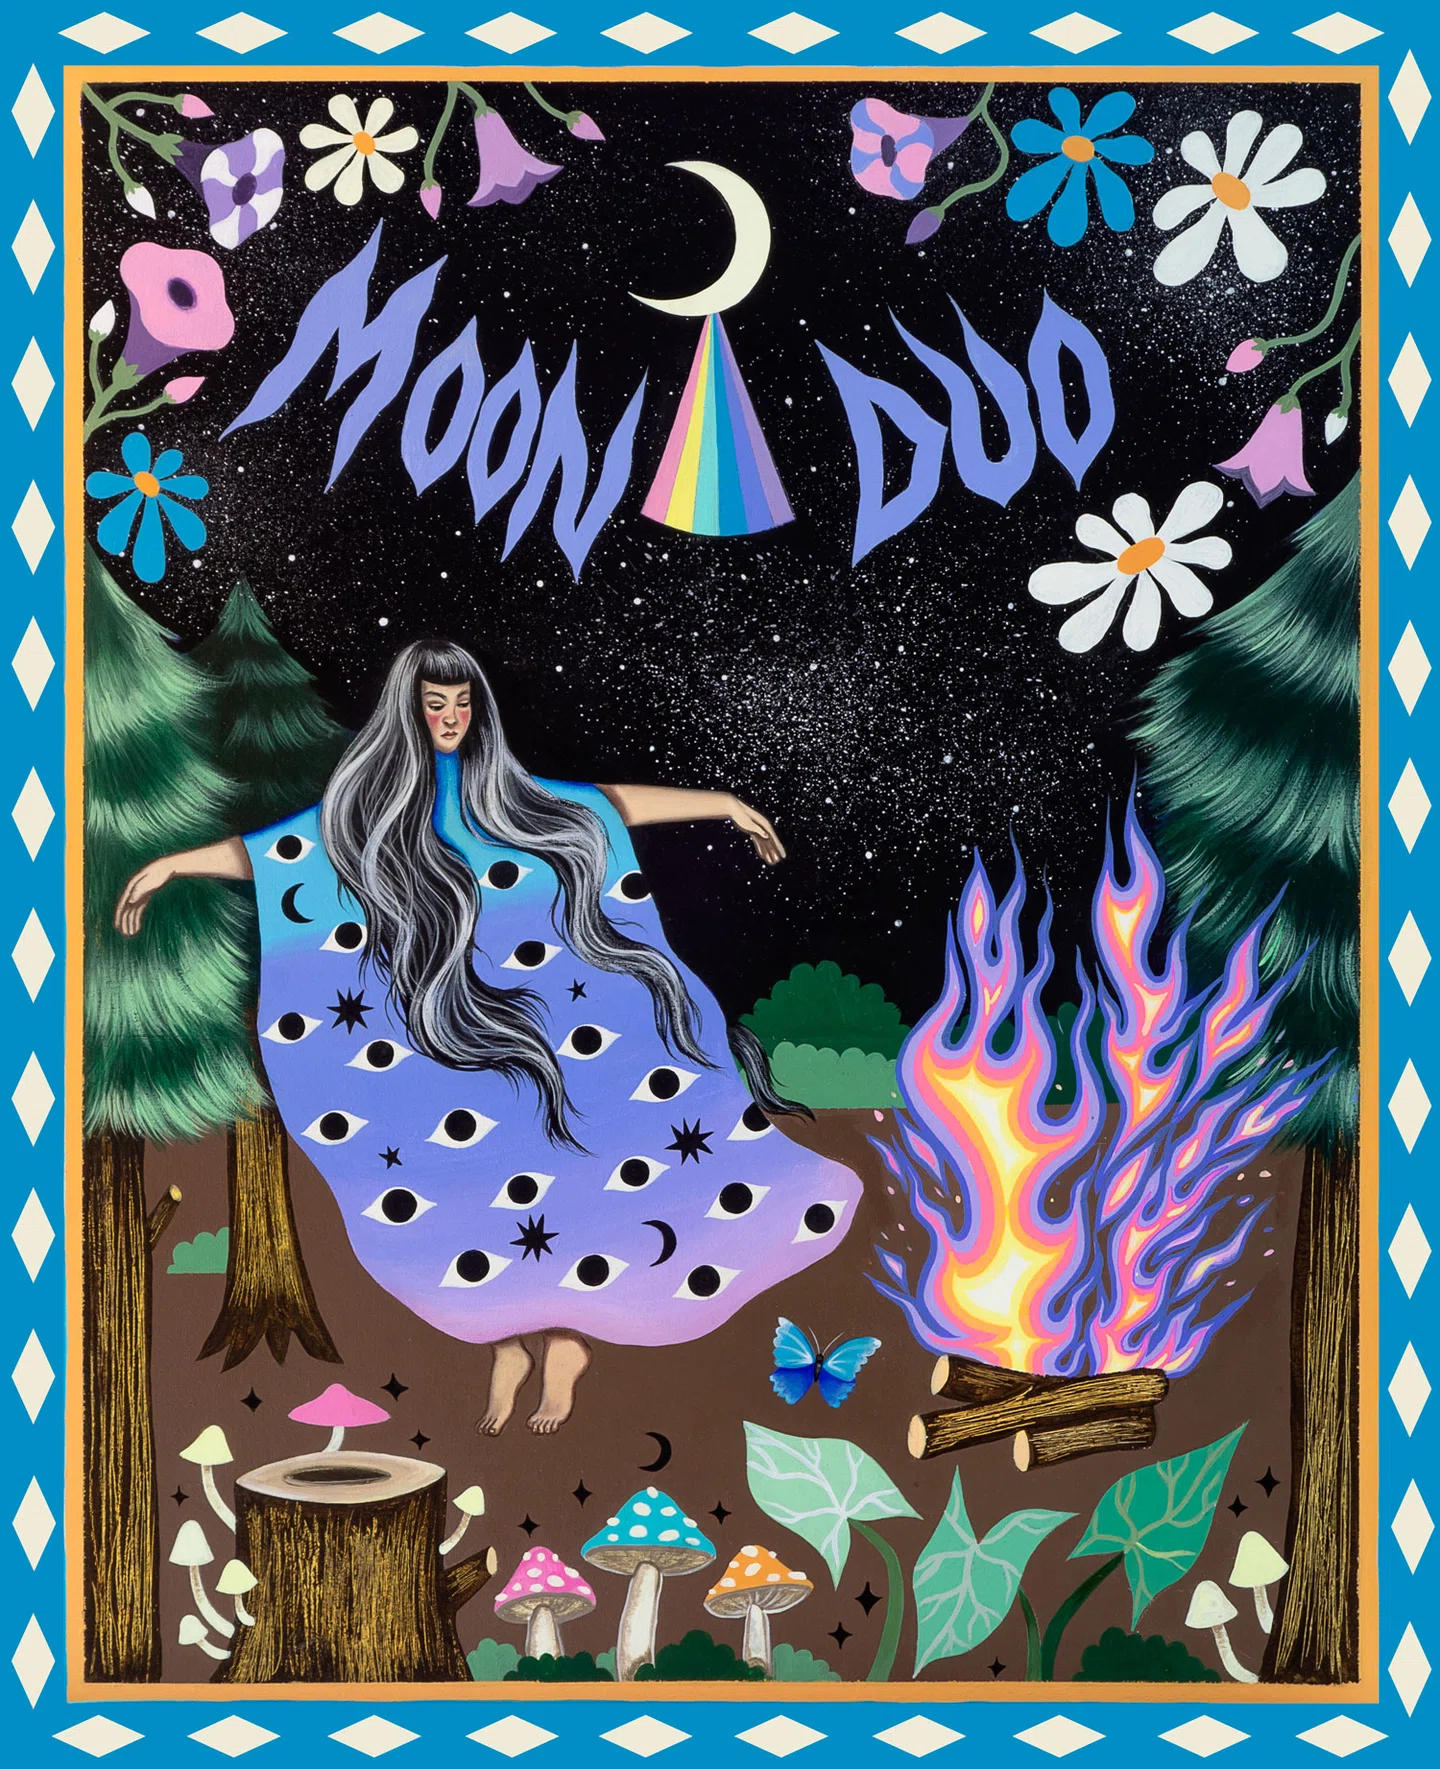 Paula Duró se aventura no reino místico para criar impressionantes pinturas esotéricas